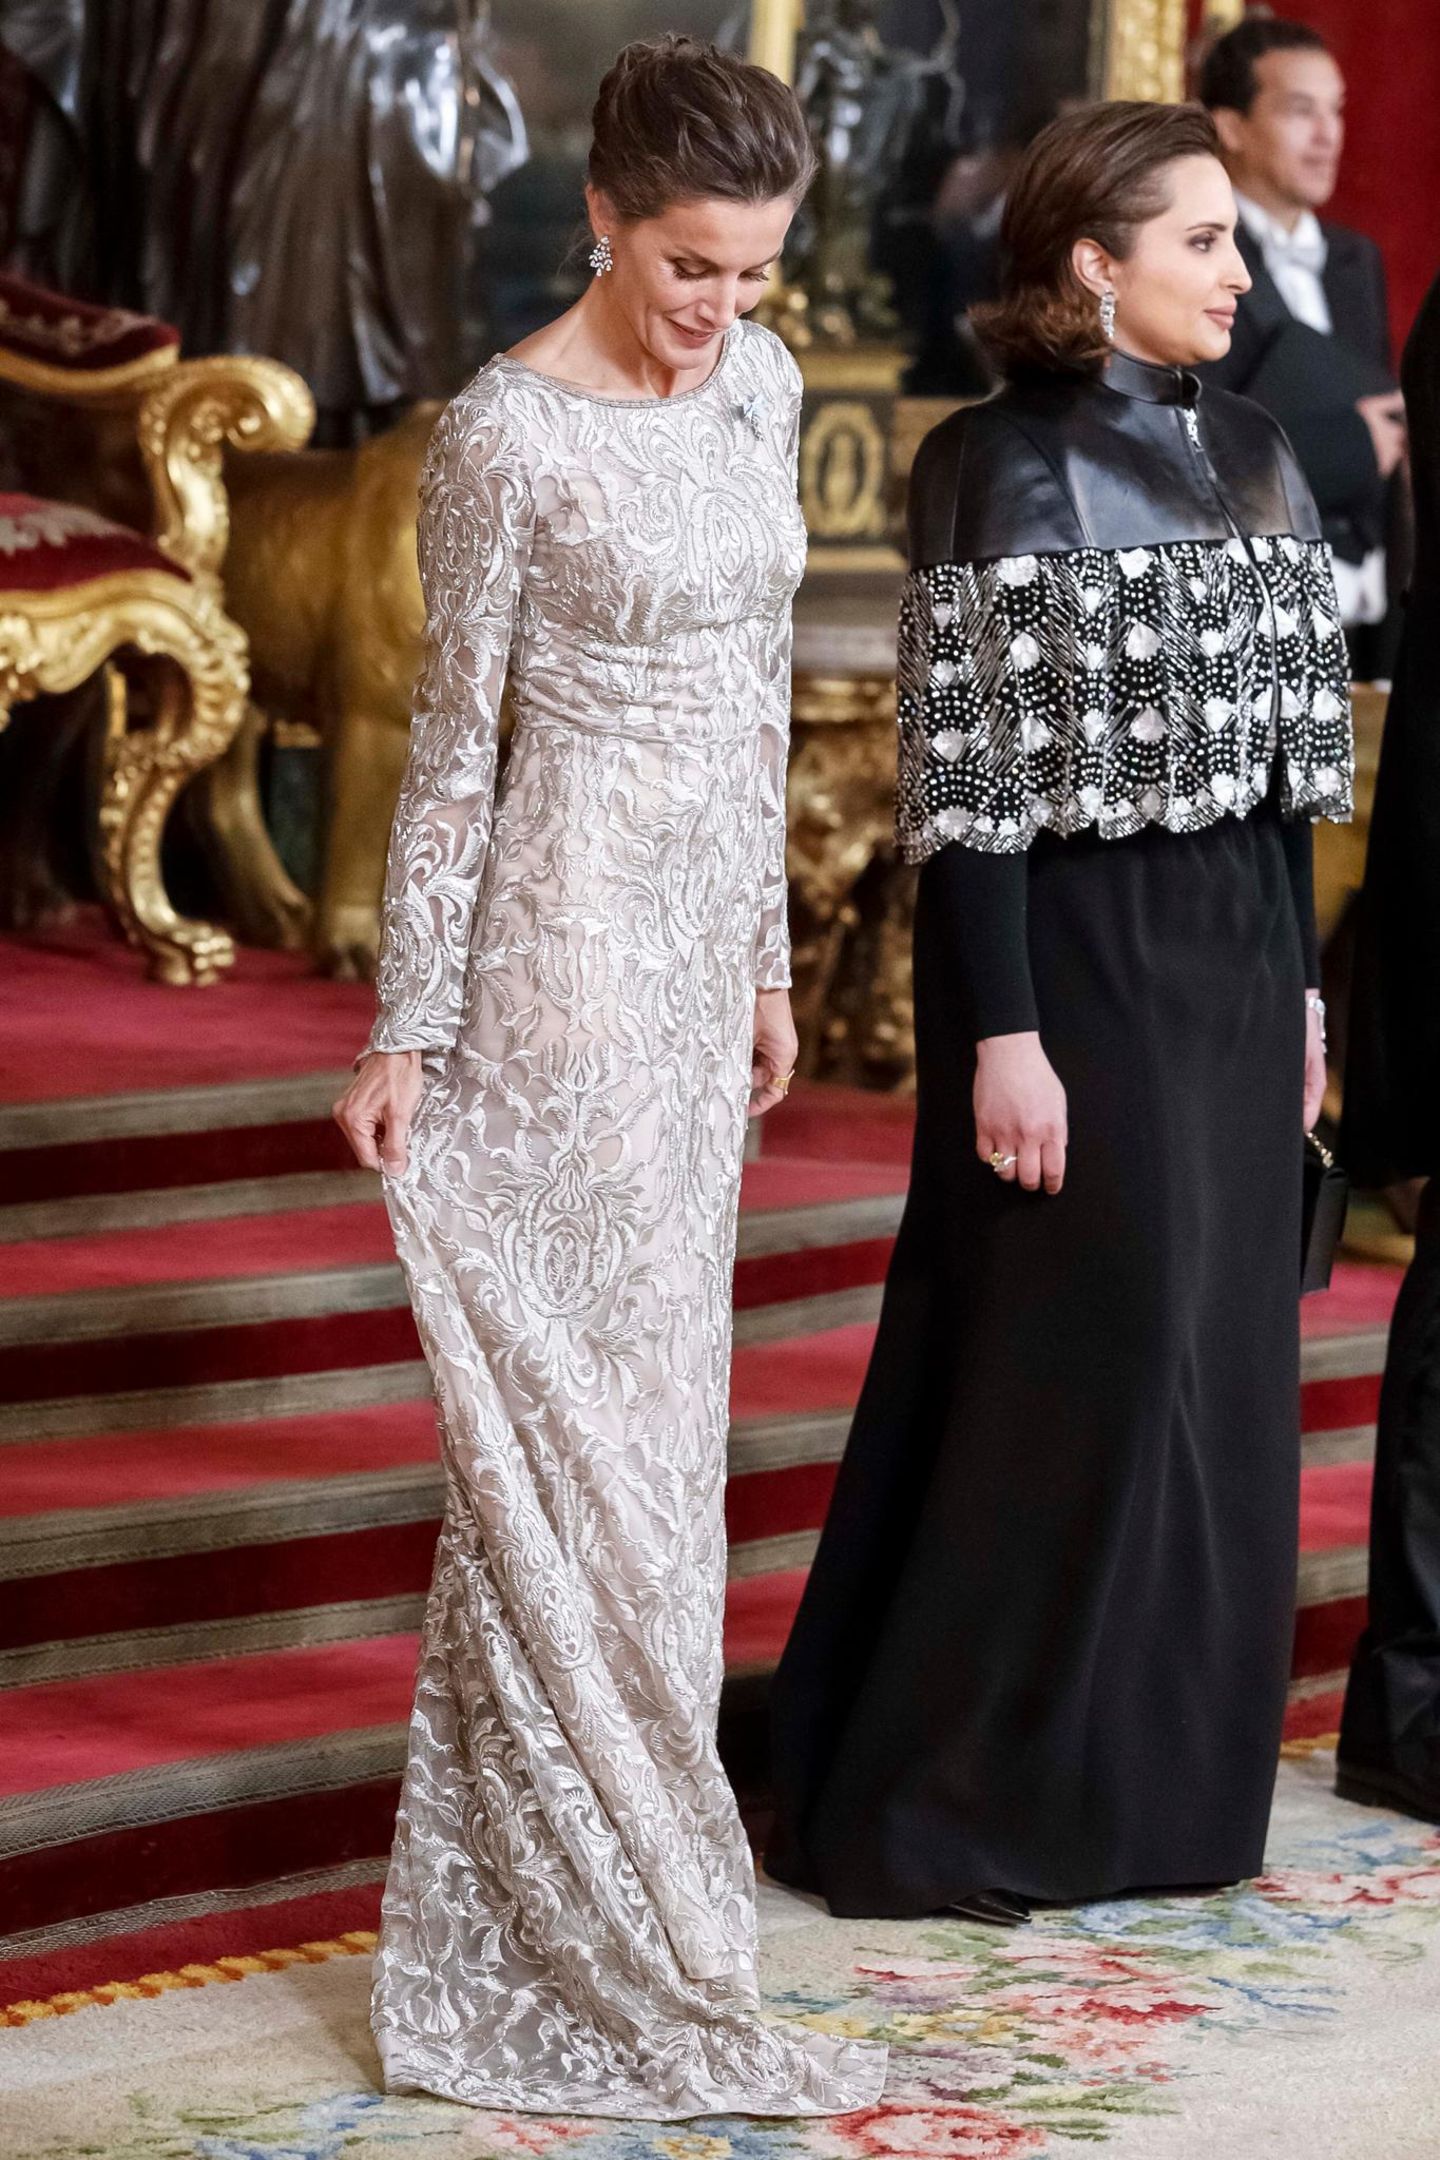 In Madrid wird die katarische Königsfamilie von König Felipe und Königin Letizia von Spanien zum Gala-Dinner empfangen. Für den Besuch beeindruckt uns Letizia wieder einmal mit ihrem Look: Sie trägt ein langes silberfarbenes Kleid, das mit glänzender Spitze besetzt ist und durch transparente Trompeten-Ärmel verzaubert. Mit ihrer Frisur betont sie zusätzlich ihre funkelnden Ohrringe.